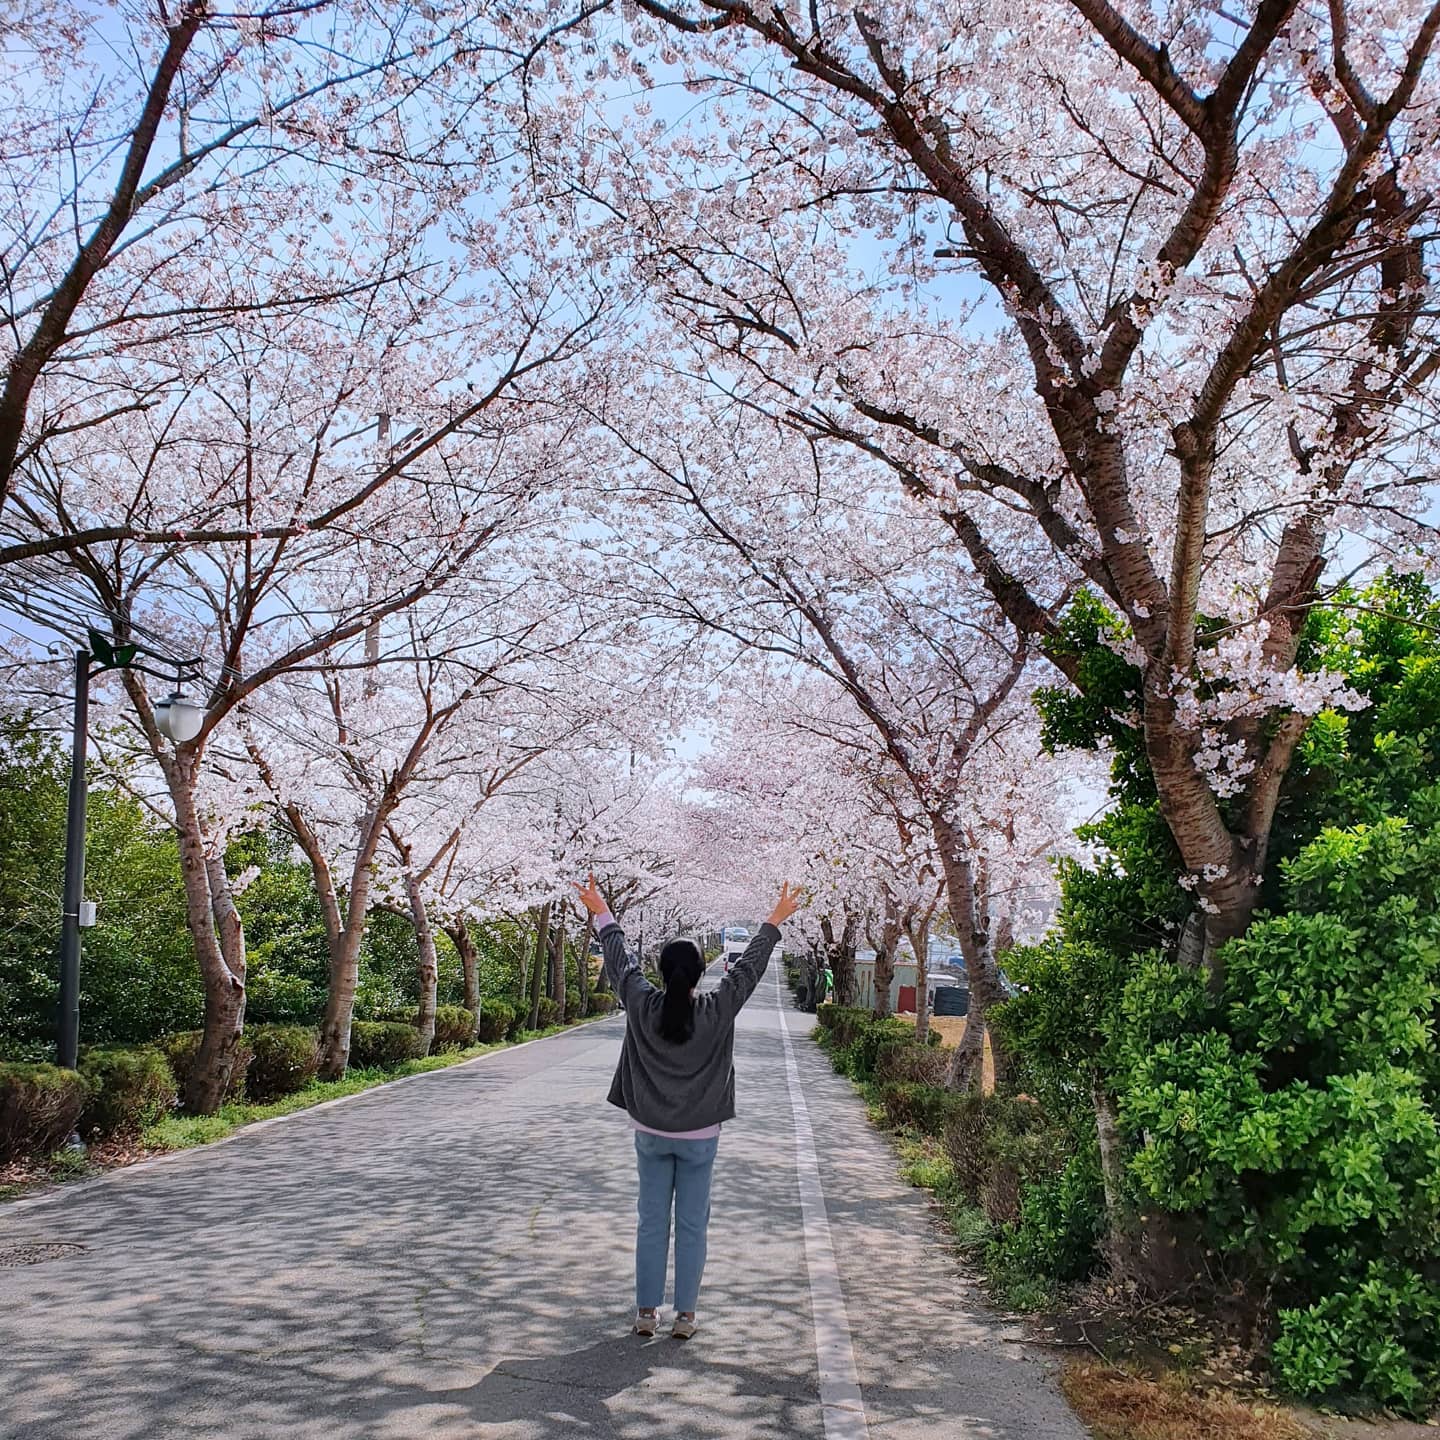 사람들이 몰리는 장소는 아니기 때문에 타이밍을 잘 맞춘다면 한적하게 벚꽃 구경을 할 수 있겠다. 